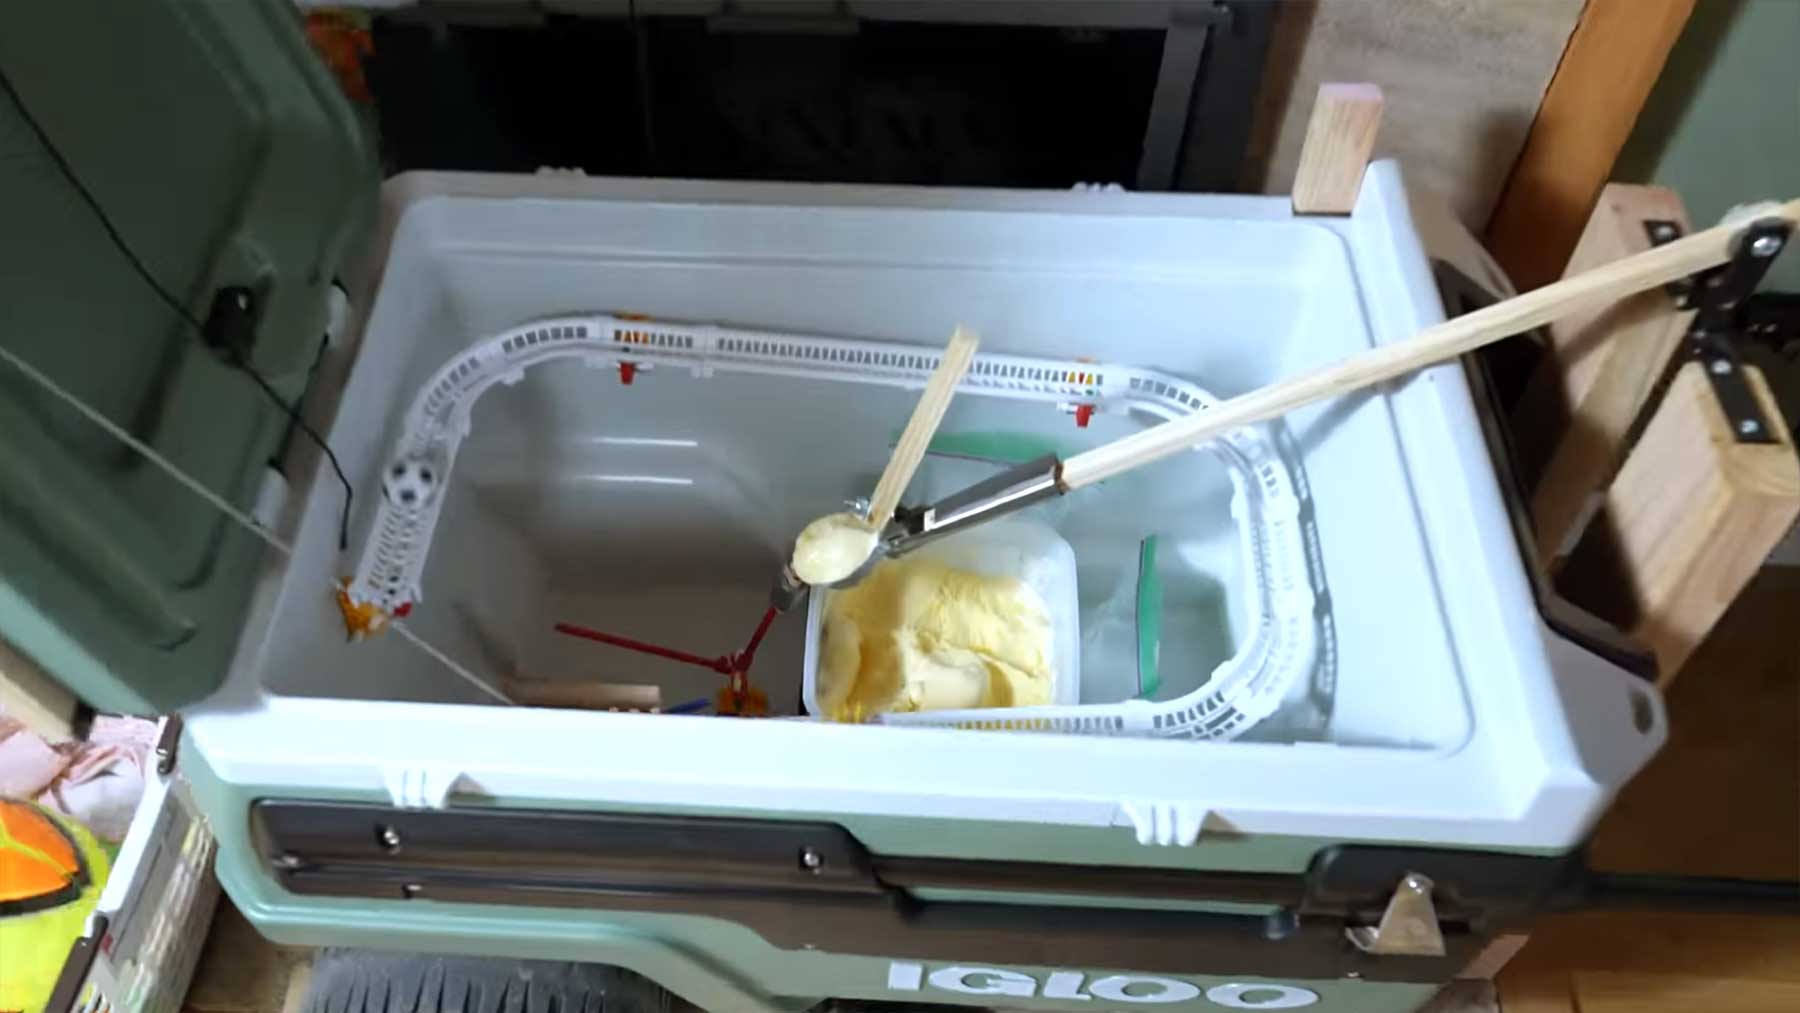 Rube Goldberg Machine serviert Eiscreme Kettenreaktion-eiscreme-sprice-machines 